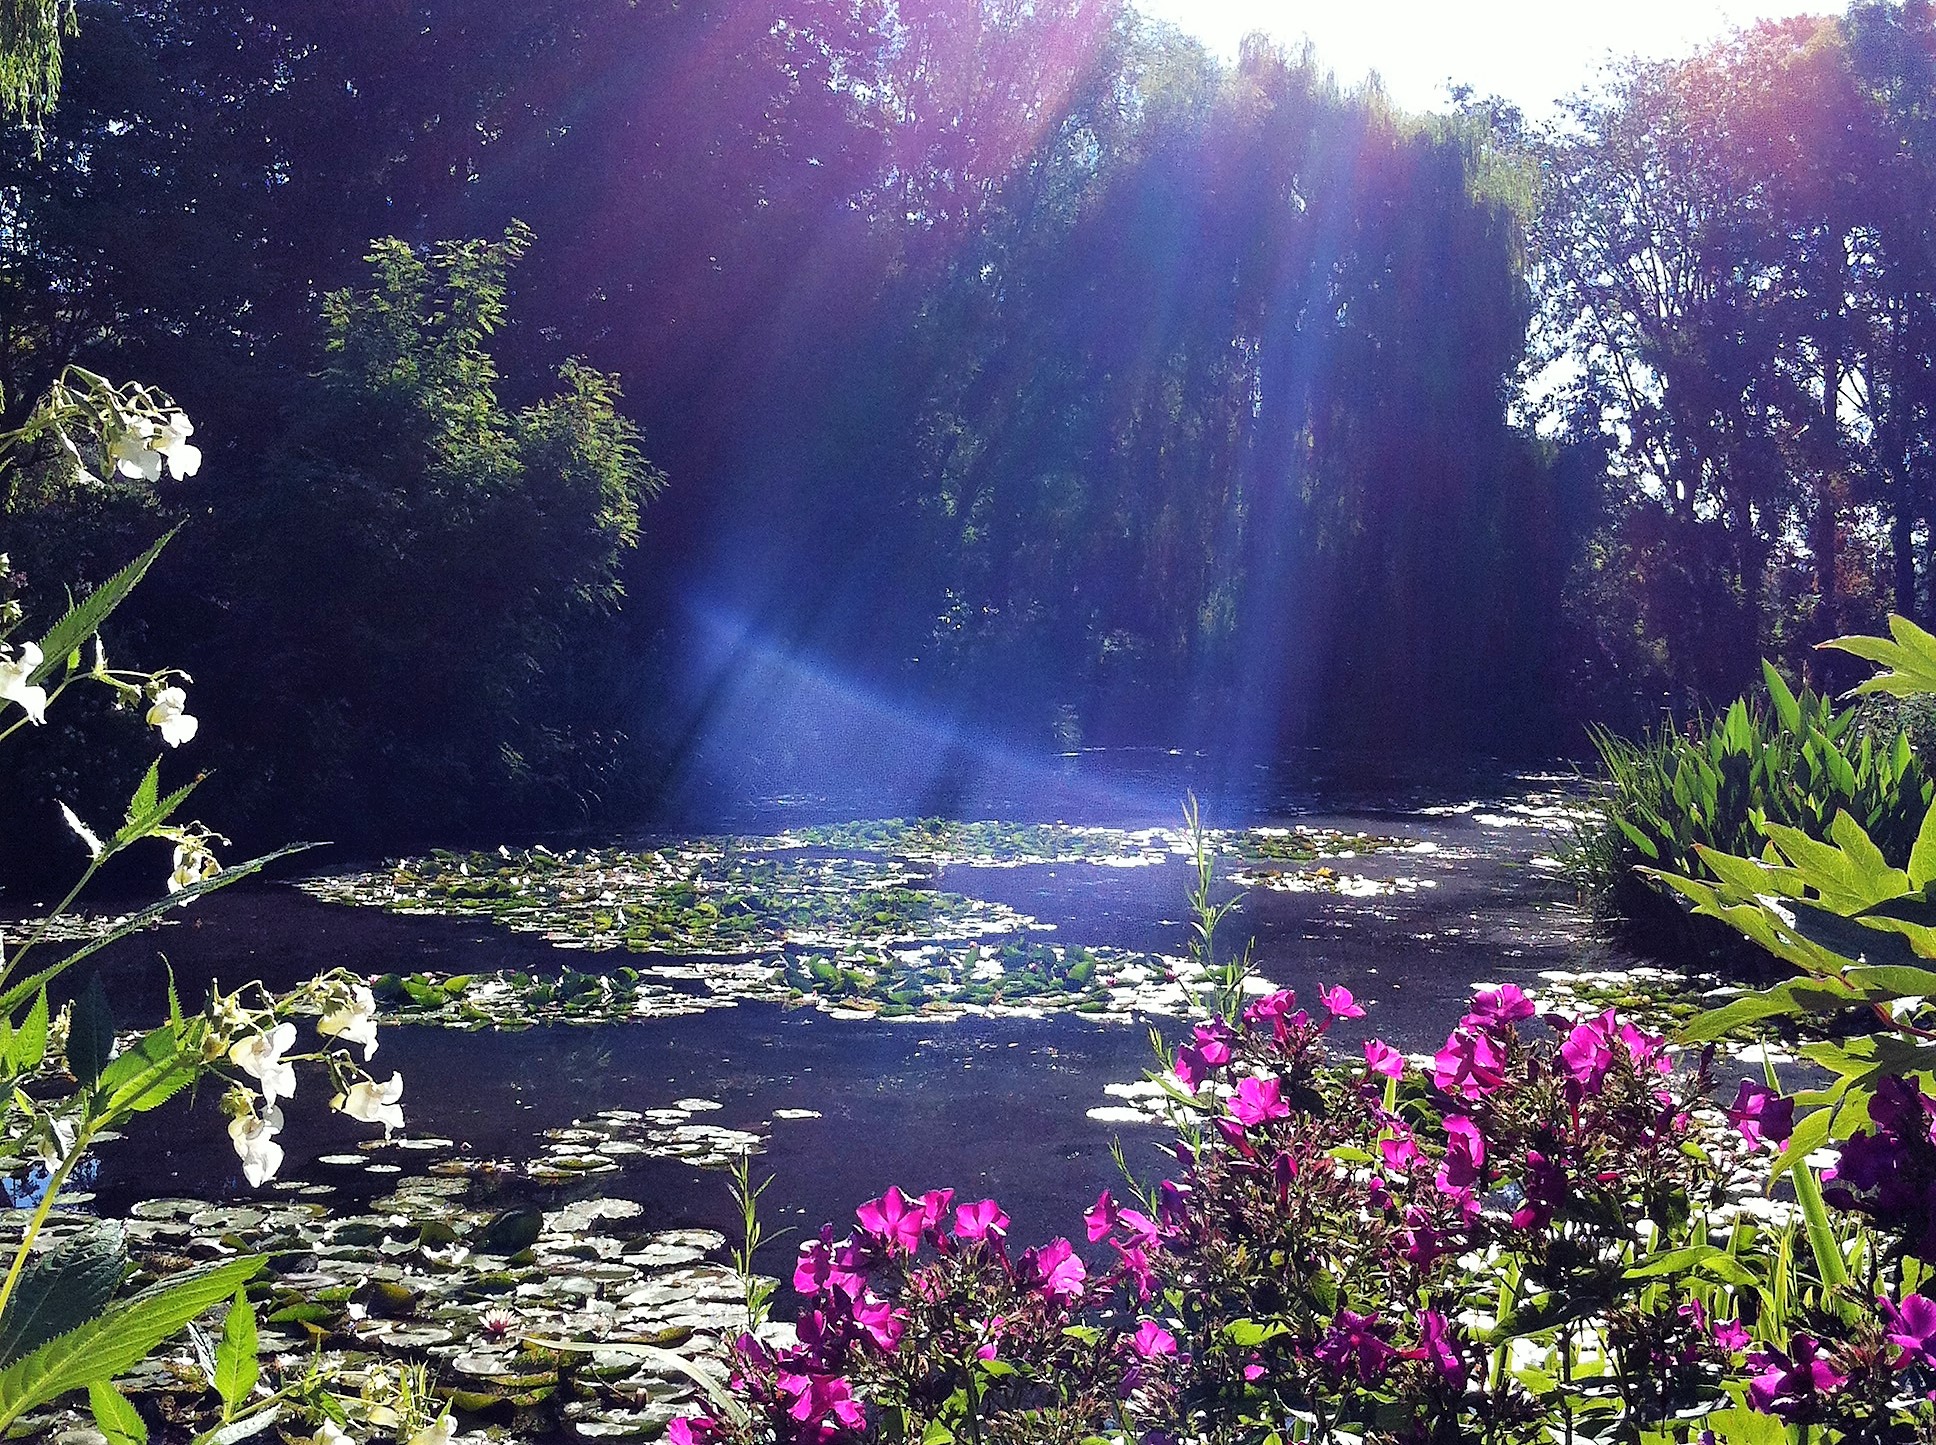 ジヴェルニーの朝日に輝く睡蓮の池